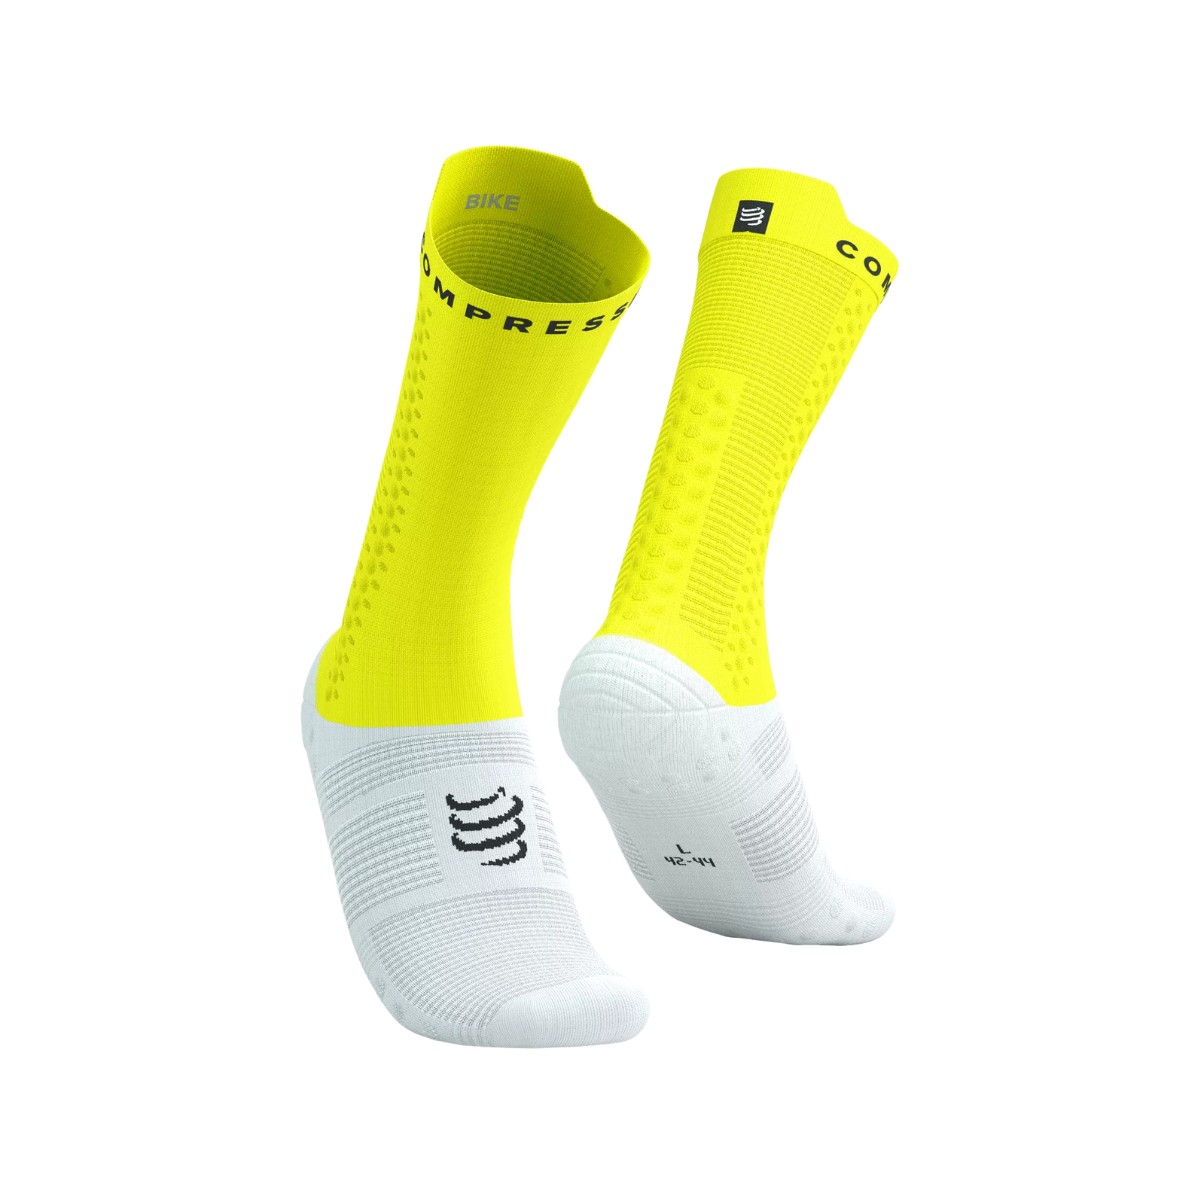 Socken Compressport Pro Racing v4.0 Gelb Weiß, Größe Größe 2